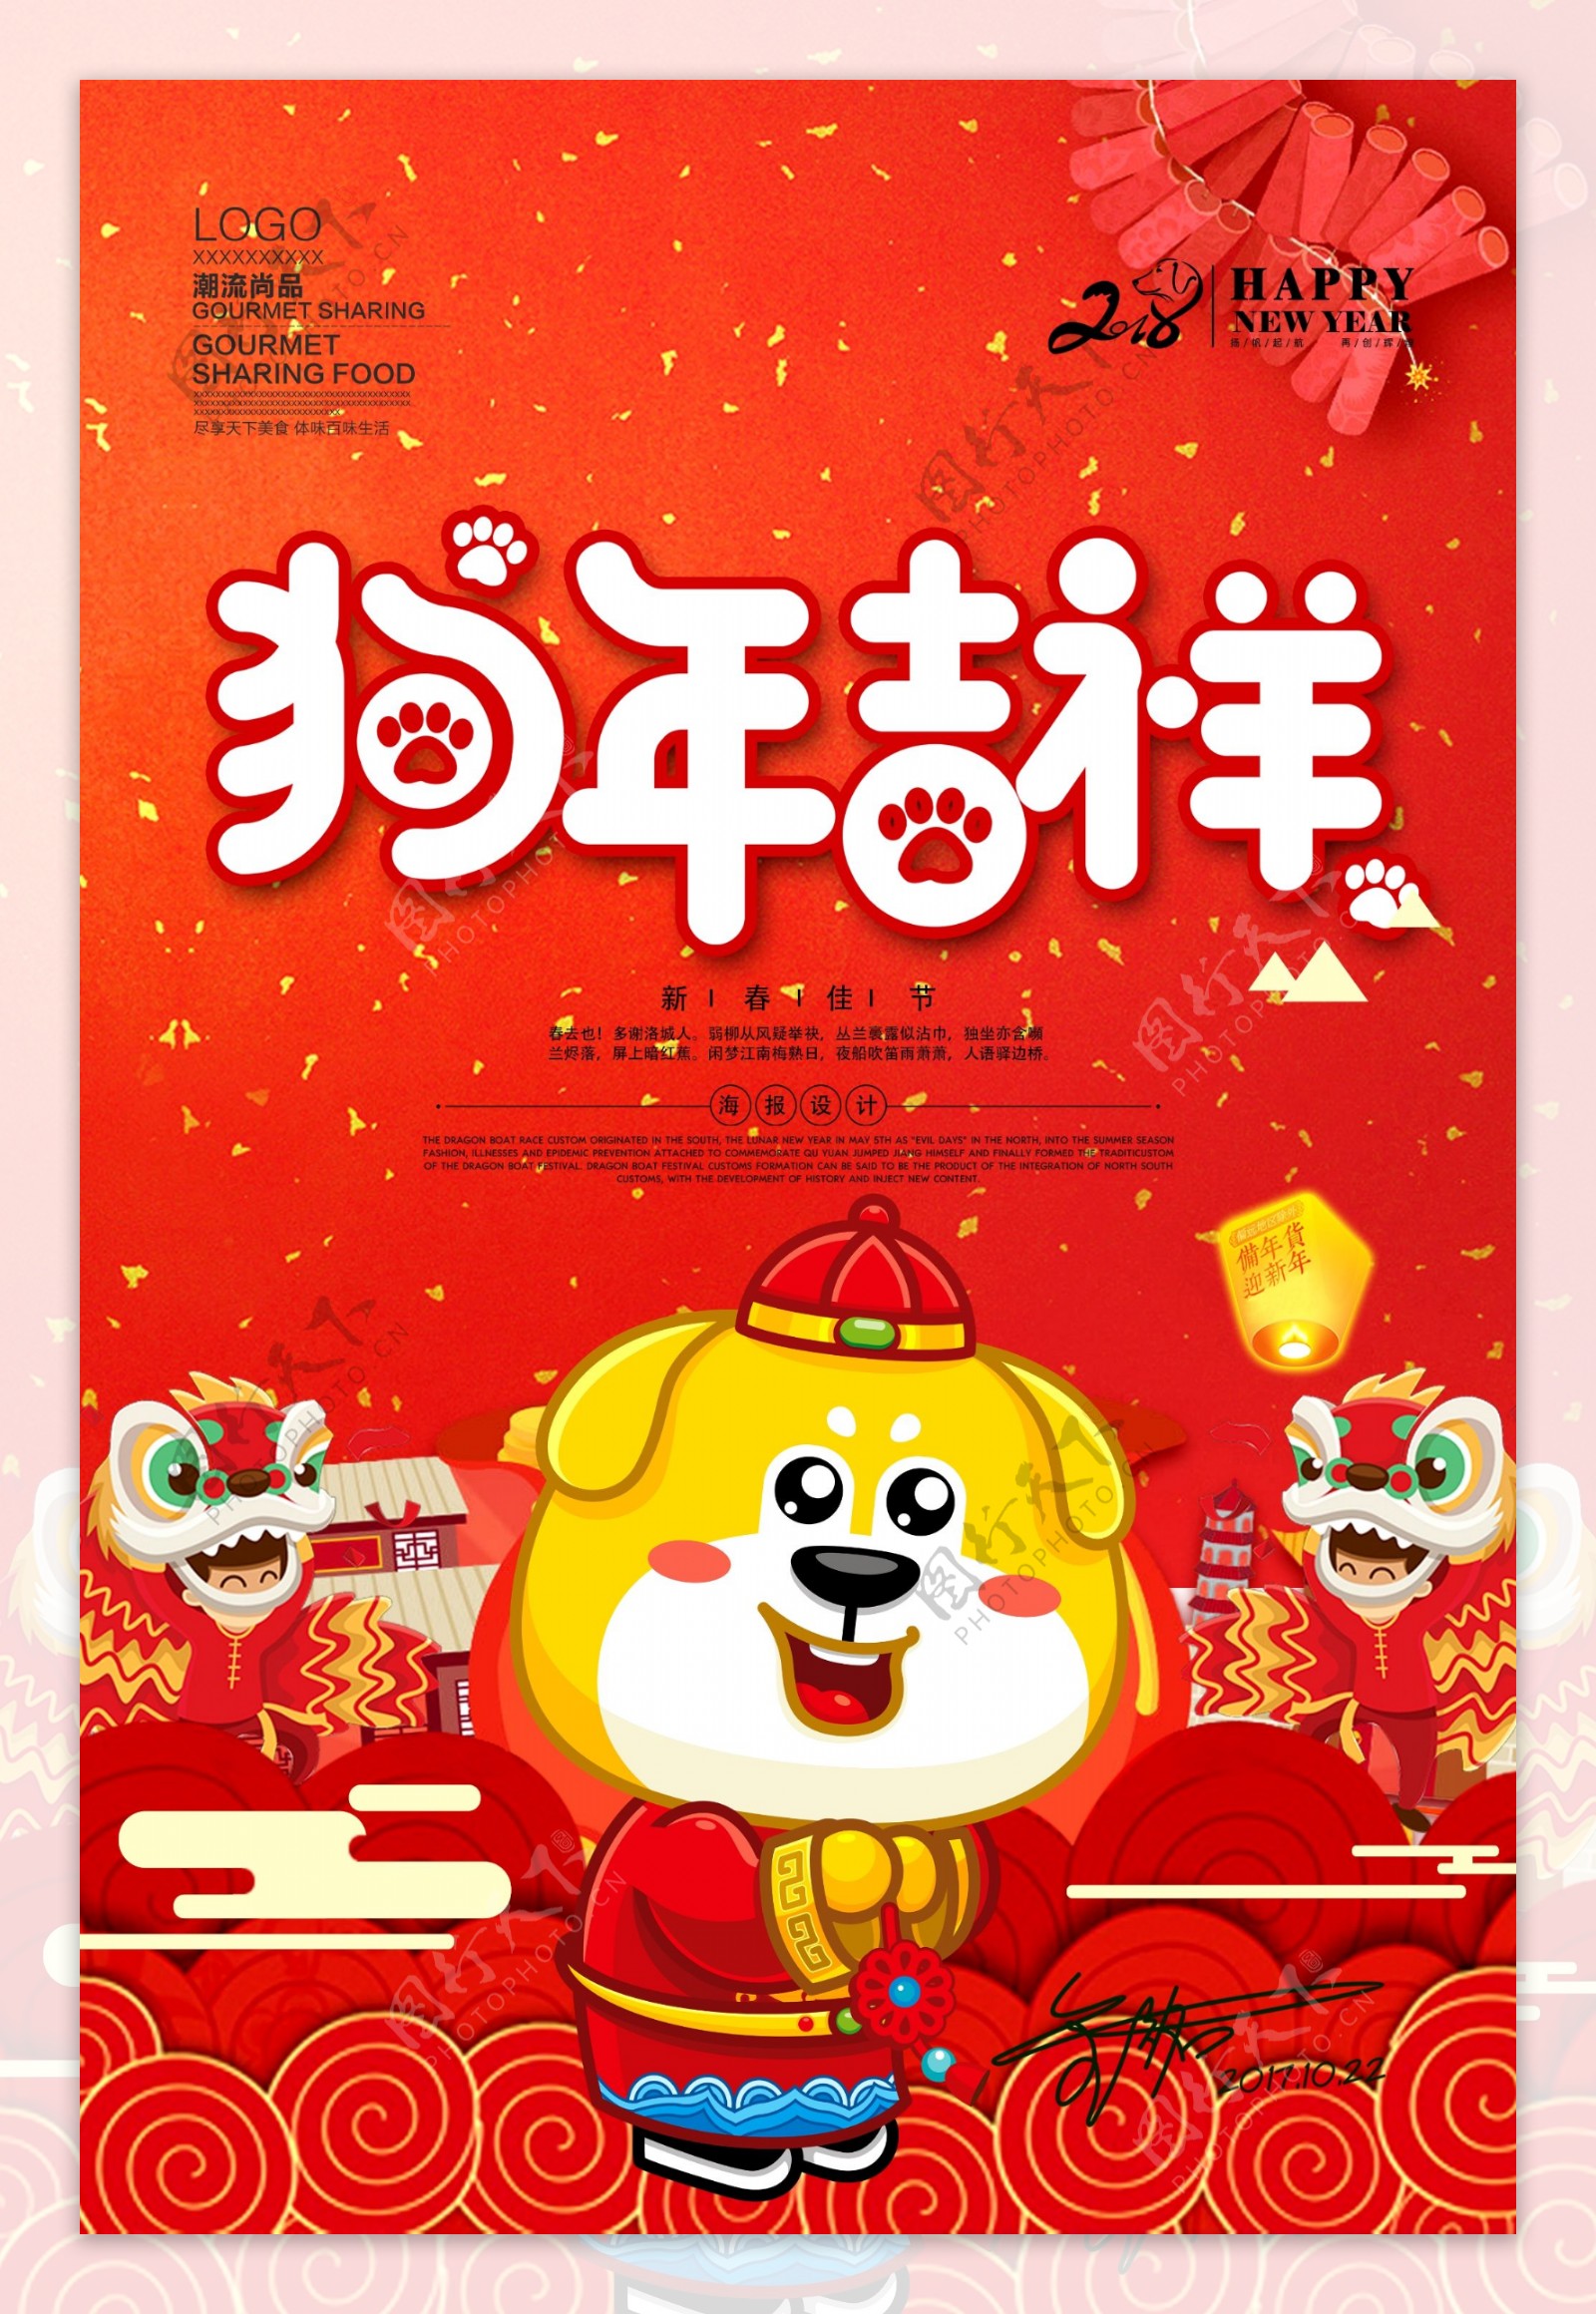 2018红色狗年吉祥海报设计